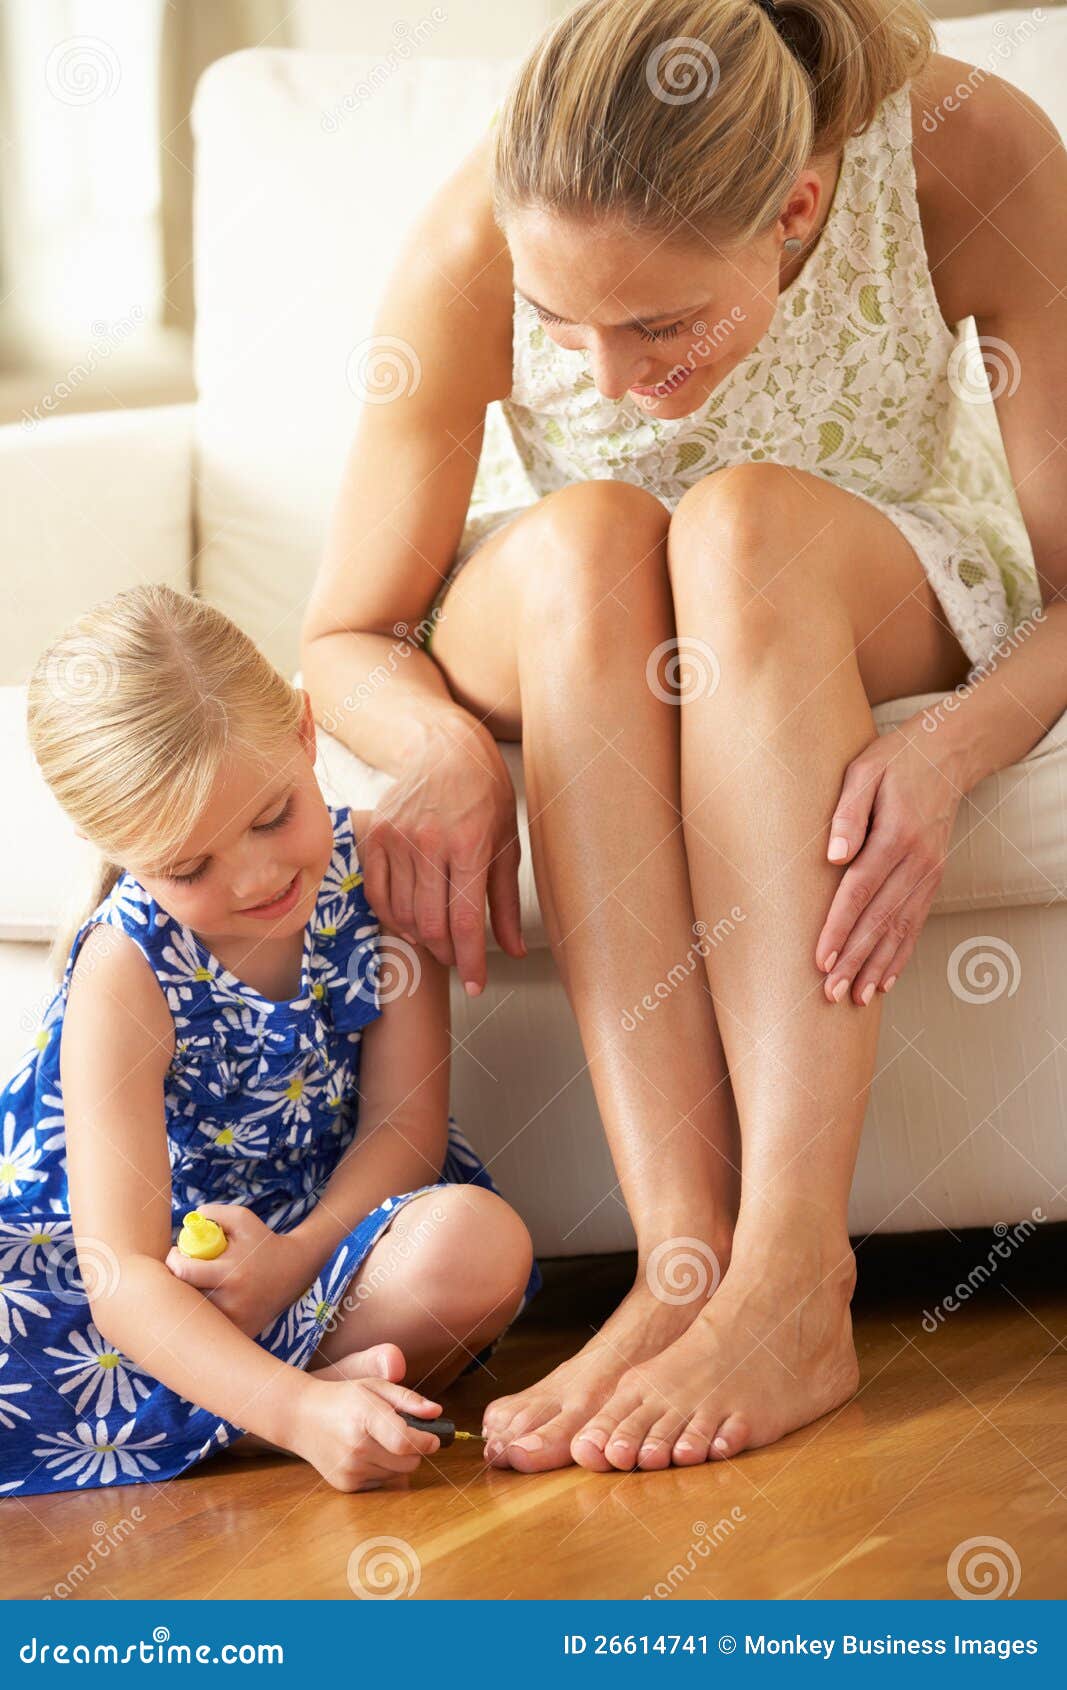 У мамы есть ноги. Детские ступни девочек облизывают. Девочка красит ногти на ногах маме. Мать и дочь ступни. Стопы детей девочек.